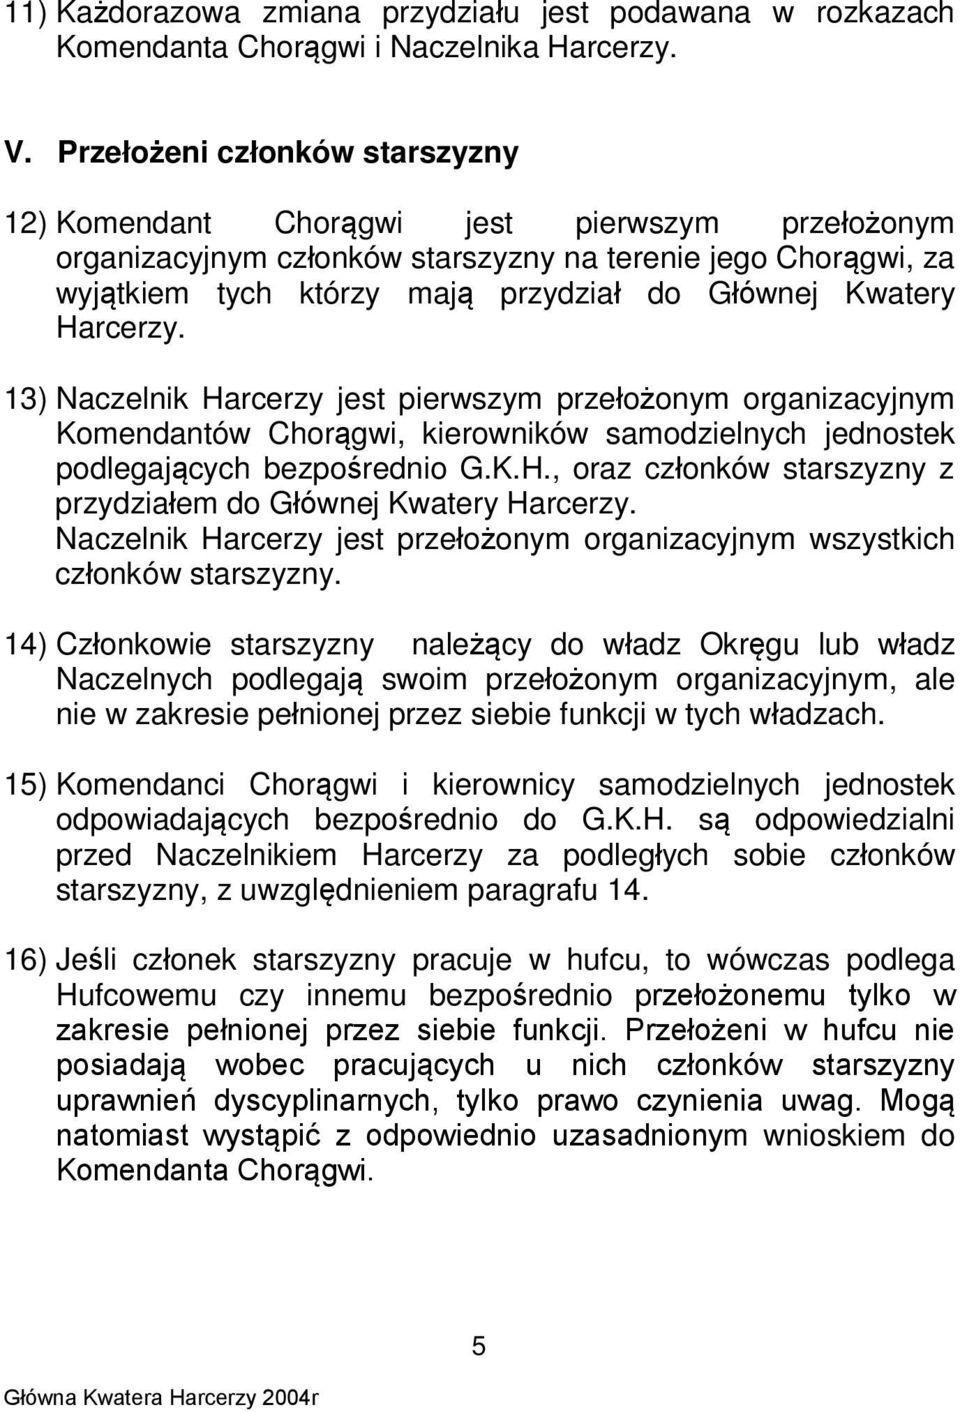 Kwatery Harcerzy. 13) Naczelnik Harcerzy jest pierwszym przełożonym organizacyjnym Komendantów Chorągwi, kierowników samodzielnych jednostek podlegających bezpośrednio G.K.H., oraz członków starszyzny z przydziałem do Głównej Kwatery Harcerzy.